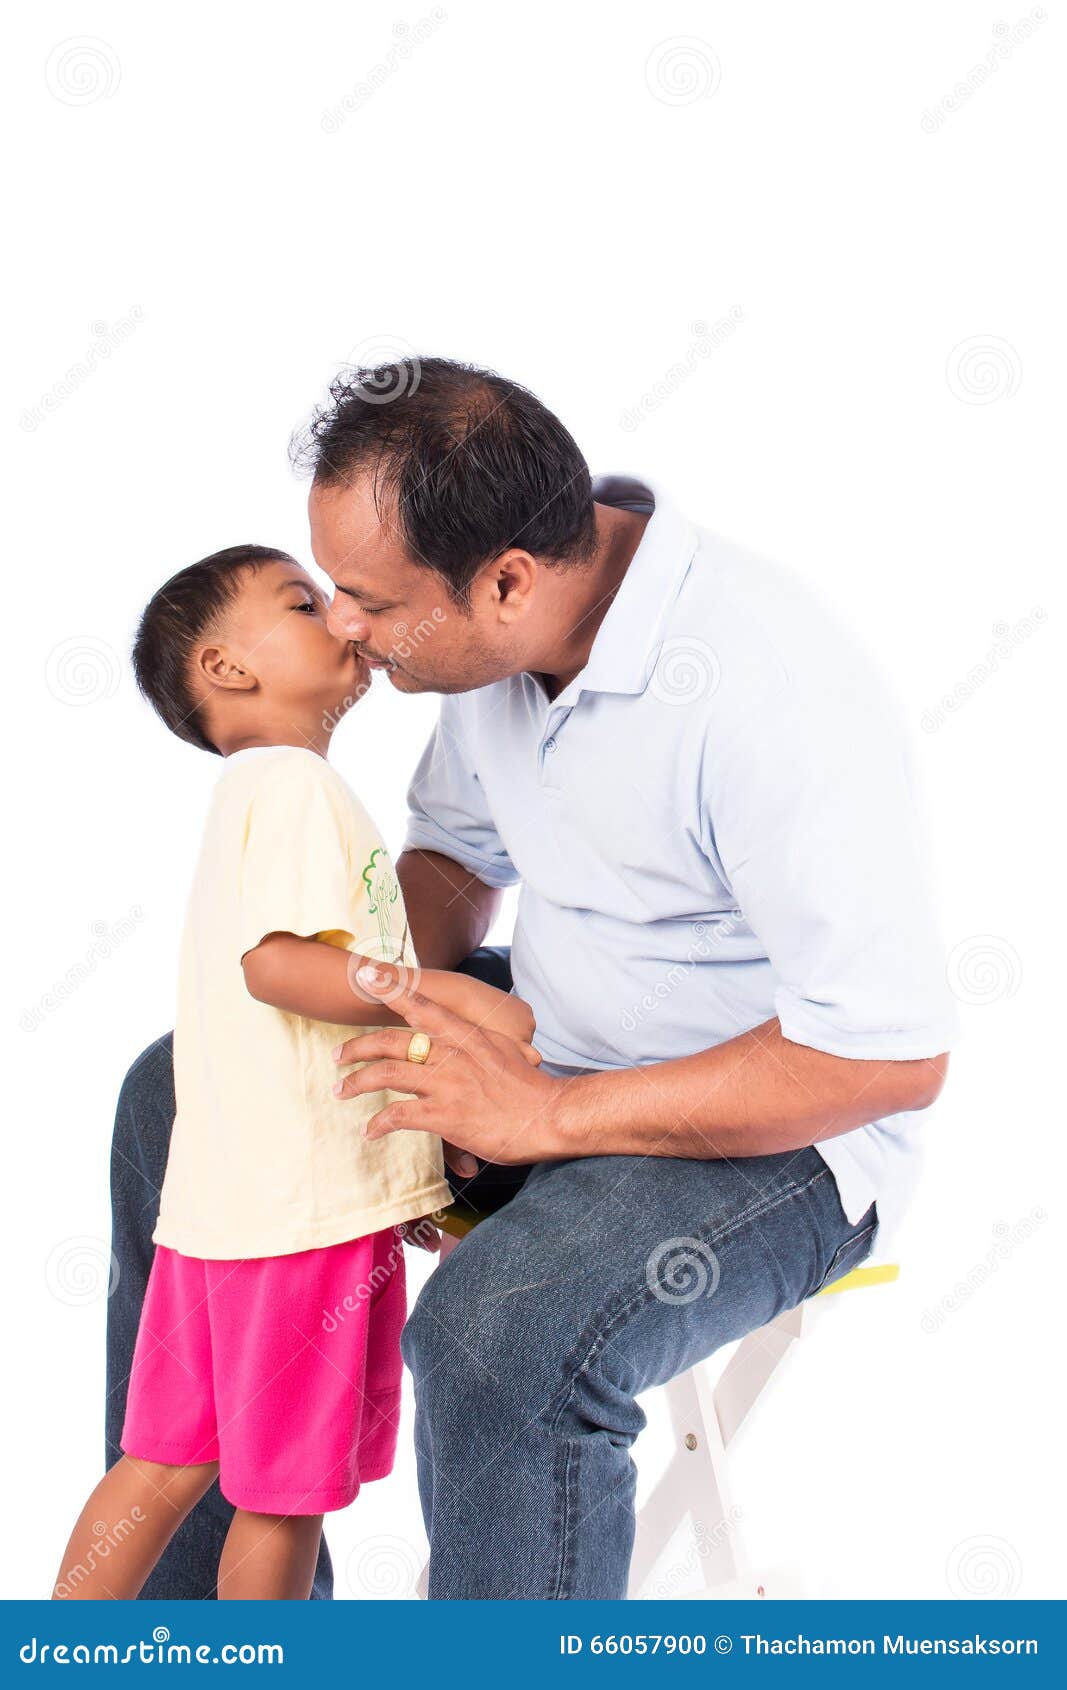 Поцелуй отец сын. Папа целует сына. Отец и сын поцелуй. Поцелуй папы и Дочки. Поцелуй отца и сына подростка.